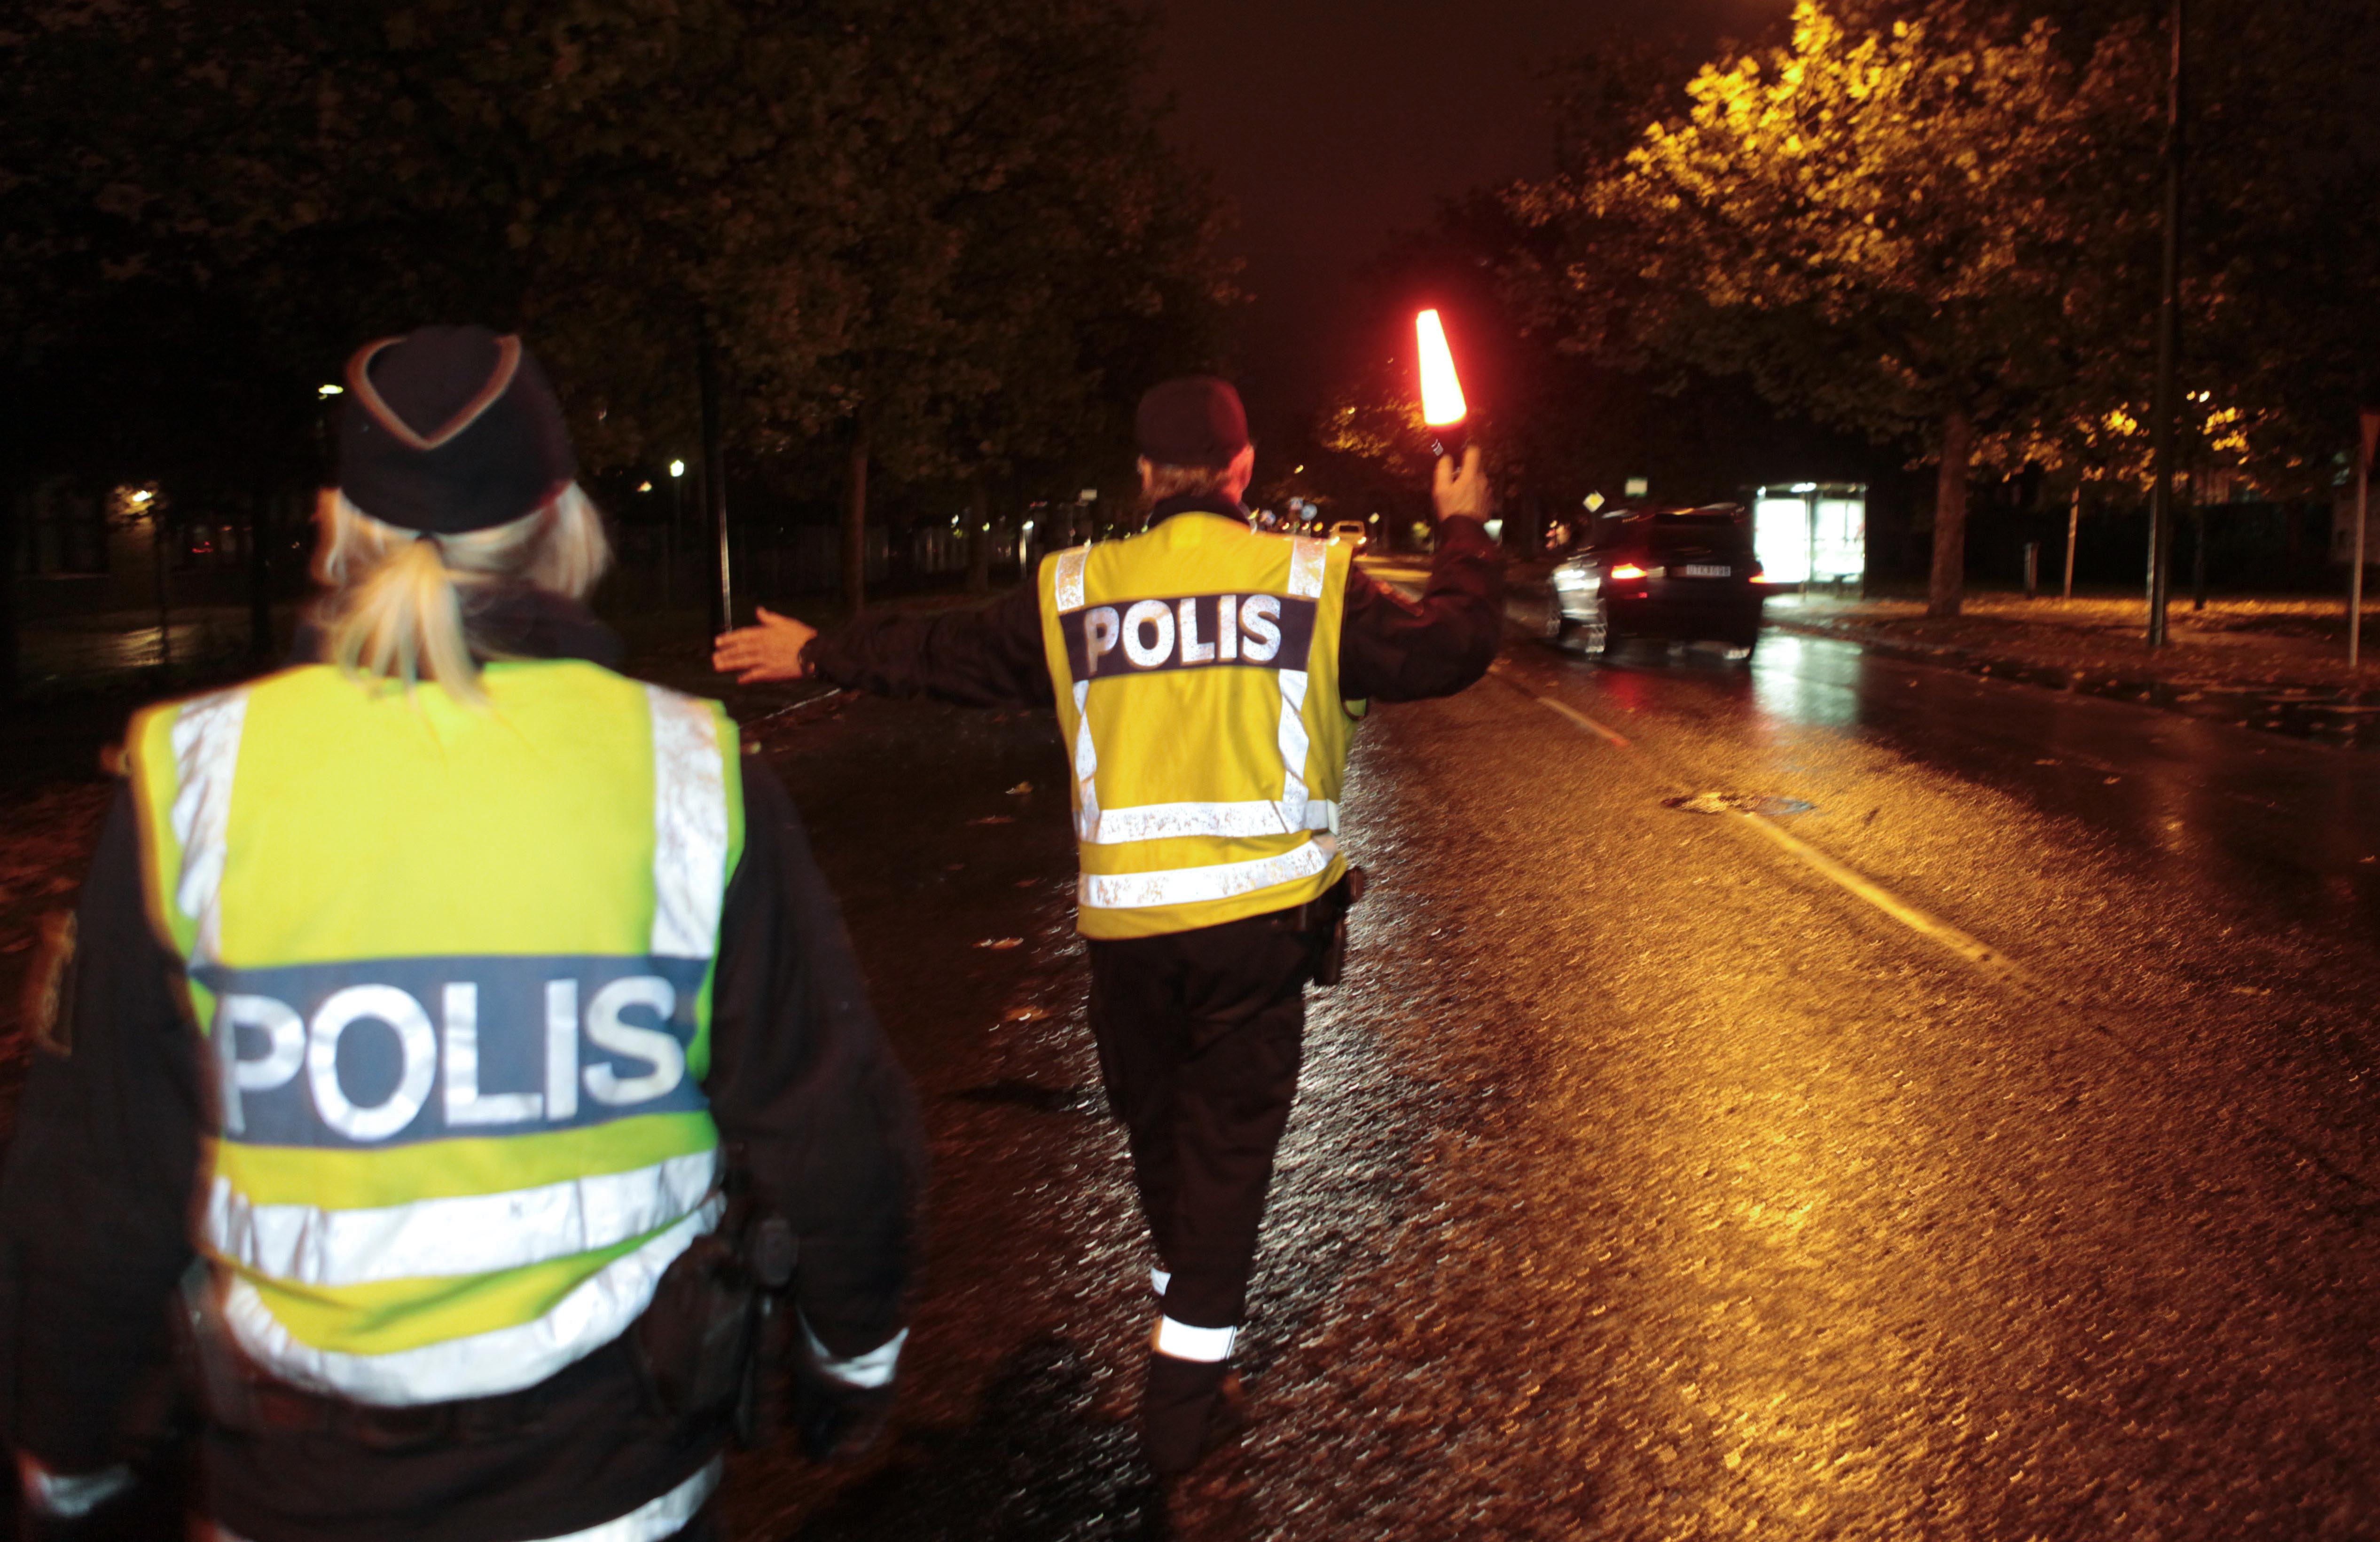 Våldtäkt , Brott och straff, Örebro, Polisen